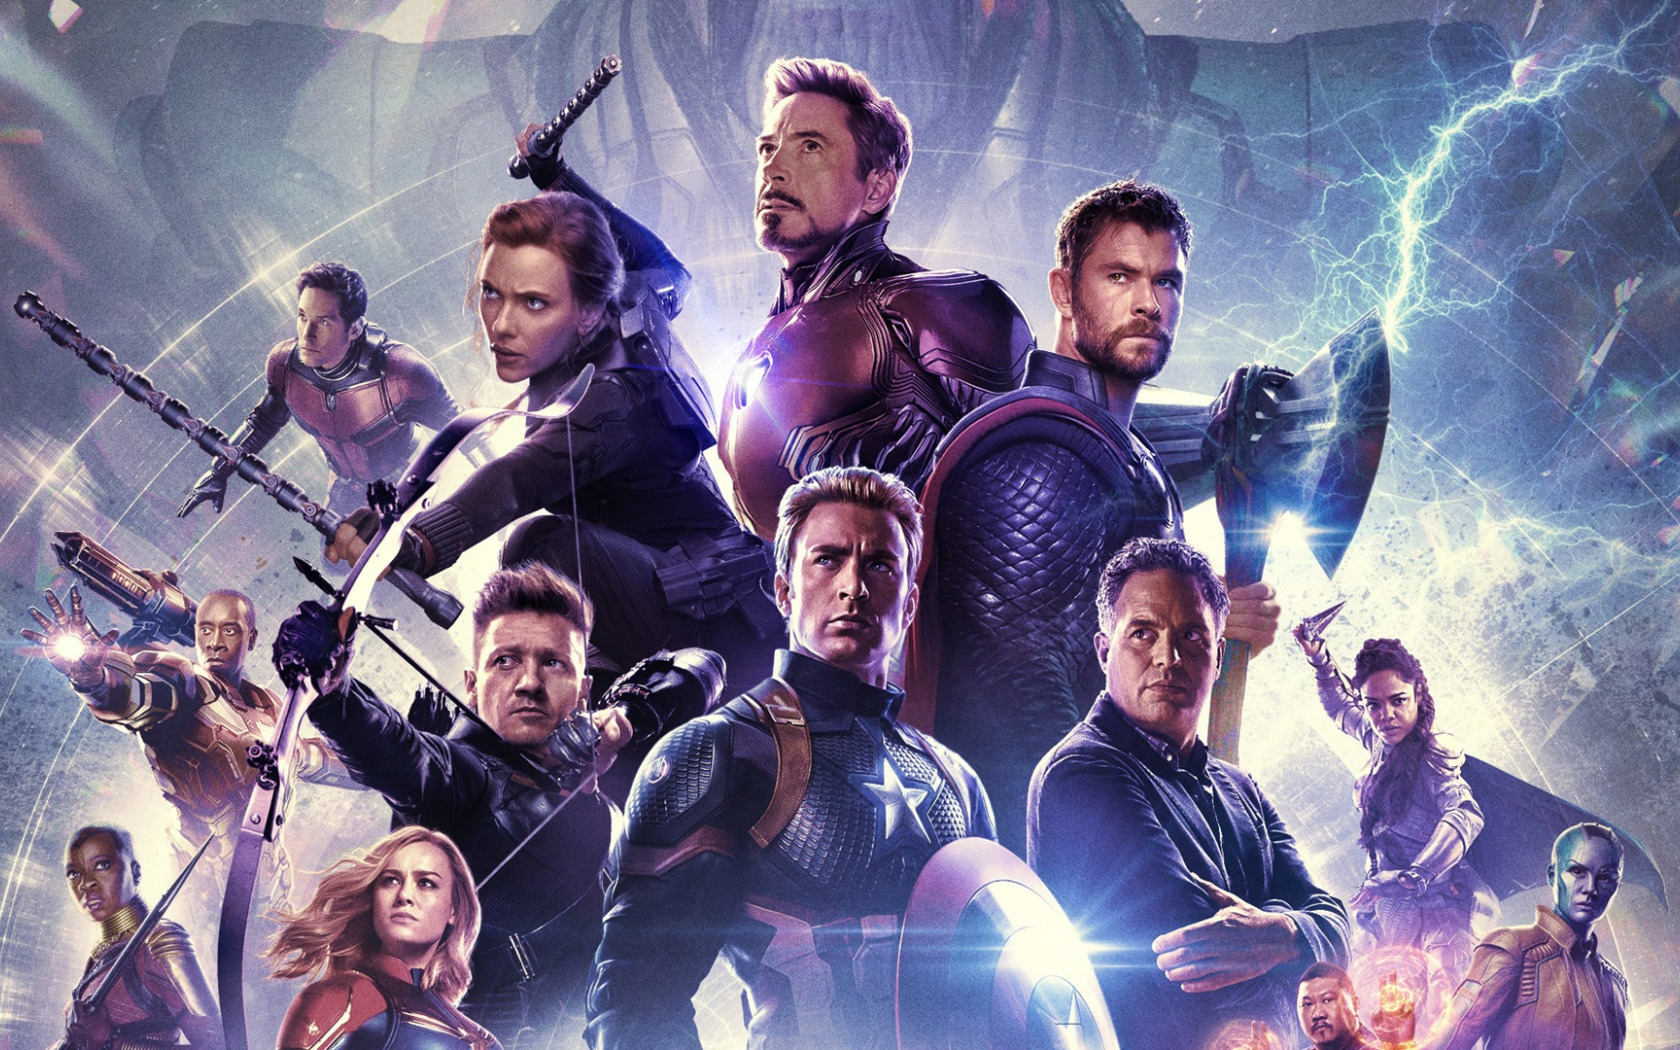 Avengers: Endgame'in ön satışlarını kaçıran sinemasever iki bilet için 15 bin dolar ödedi